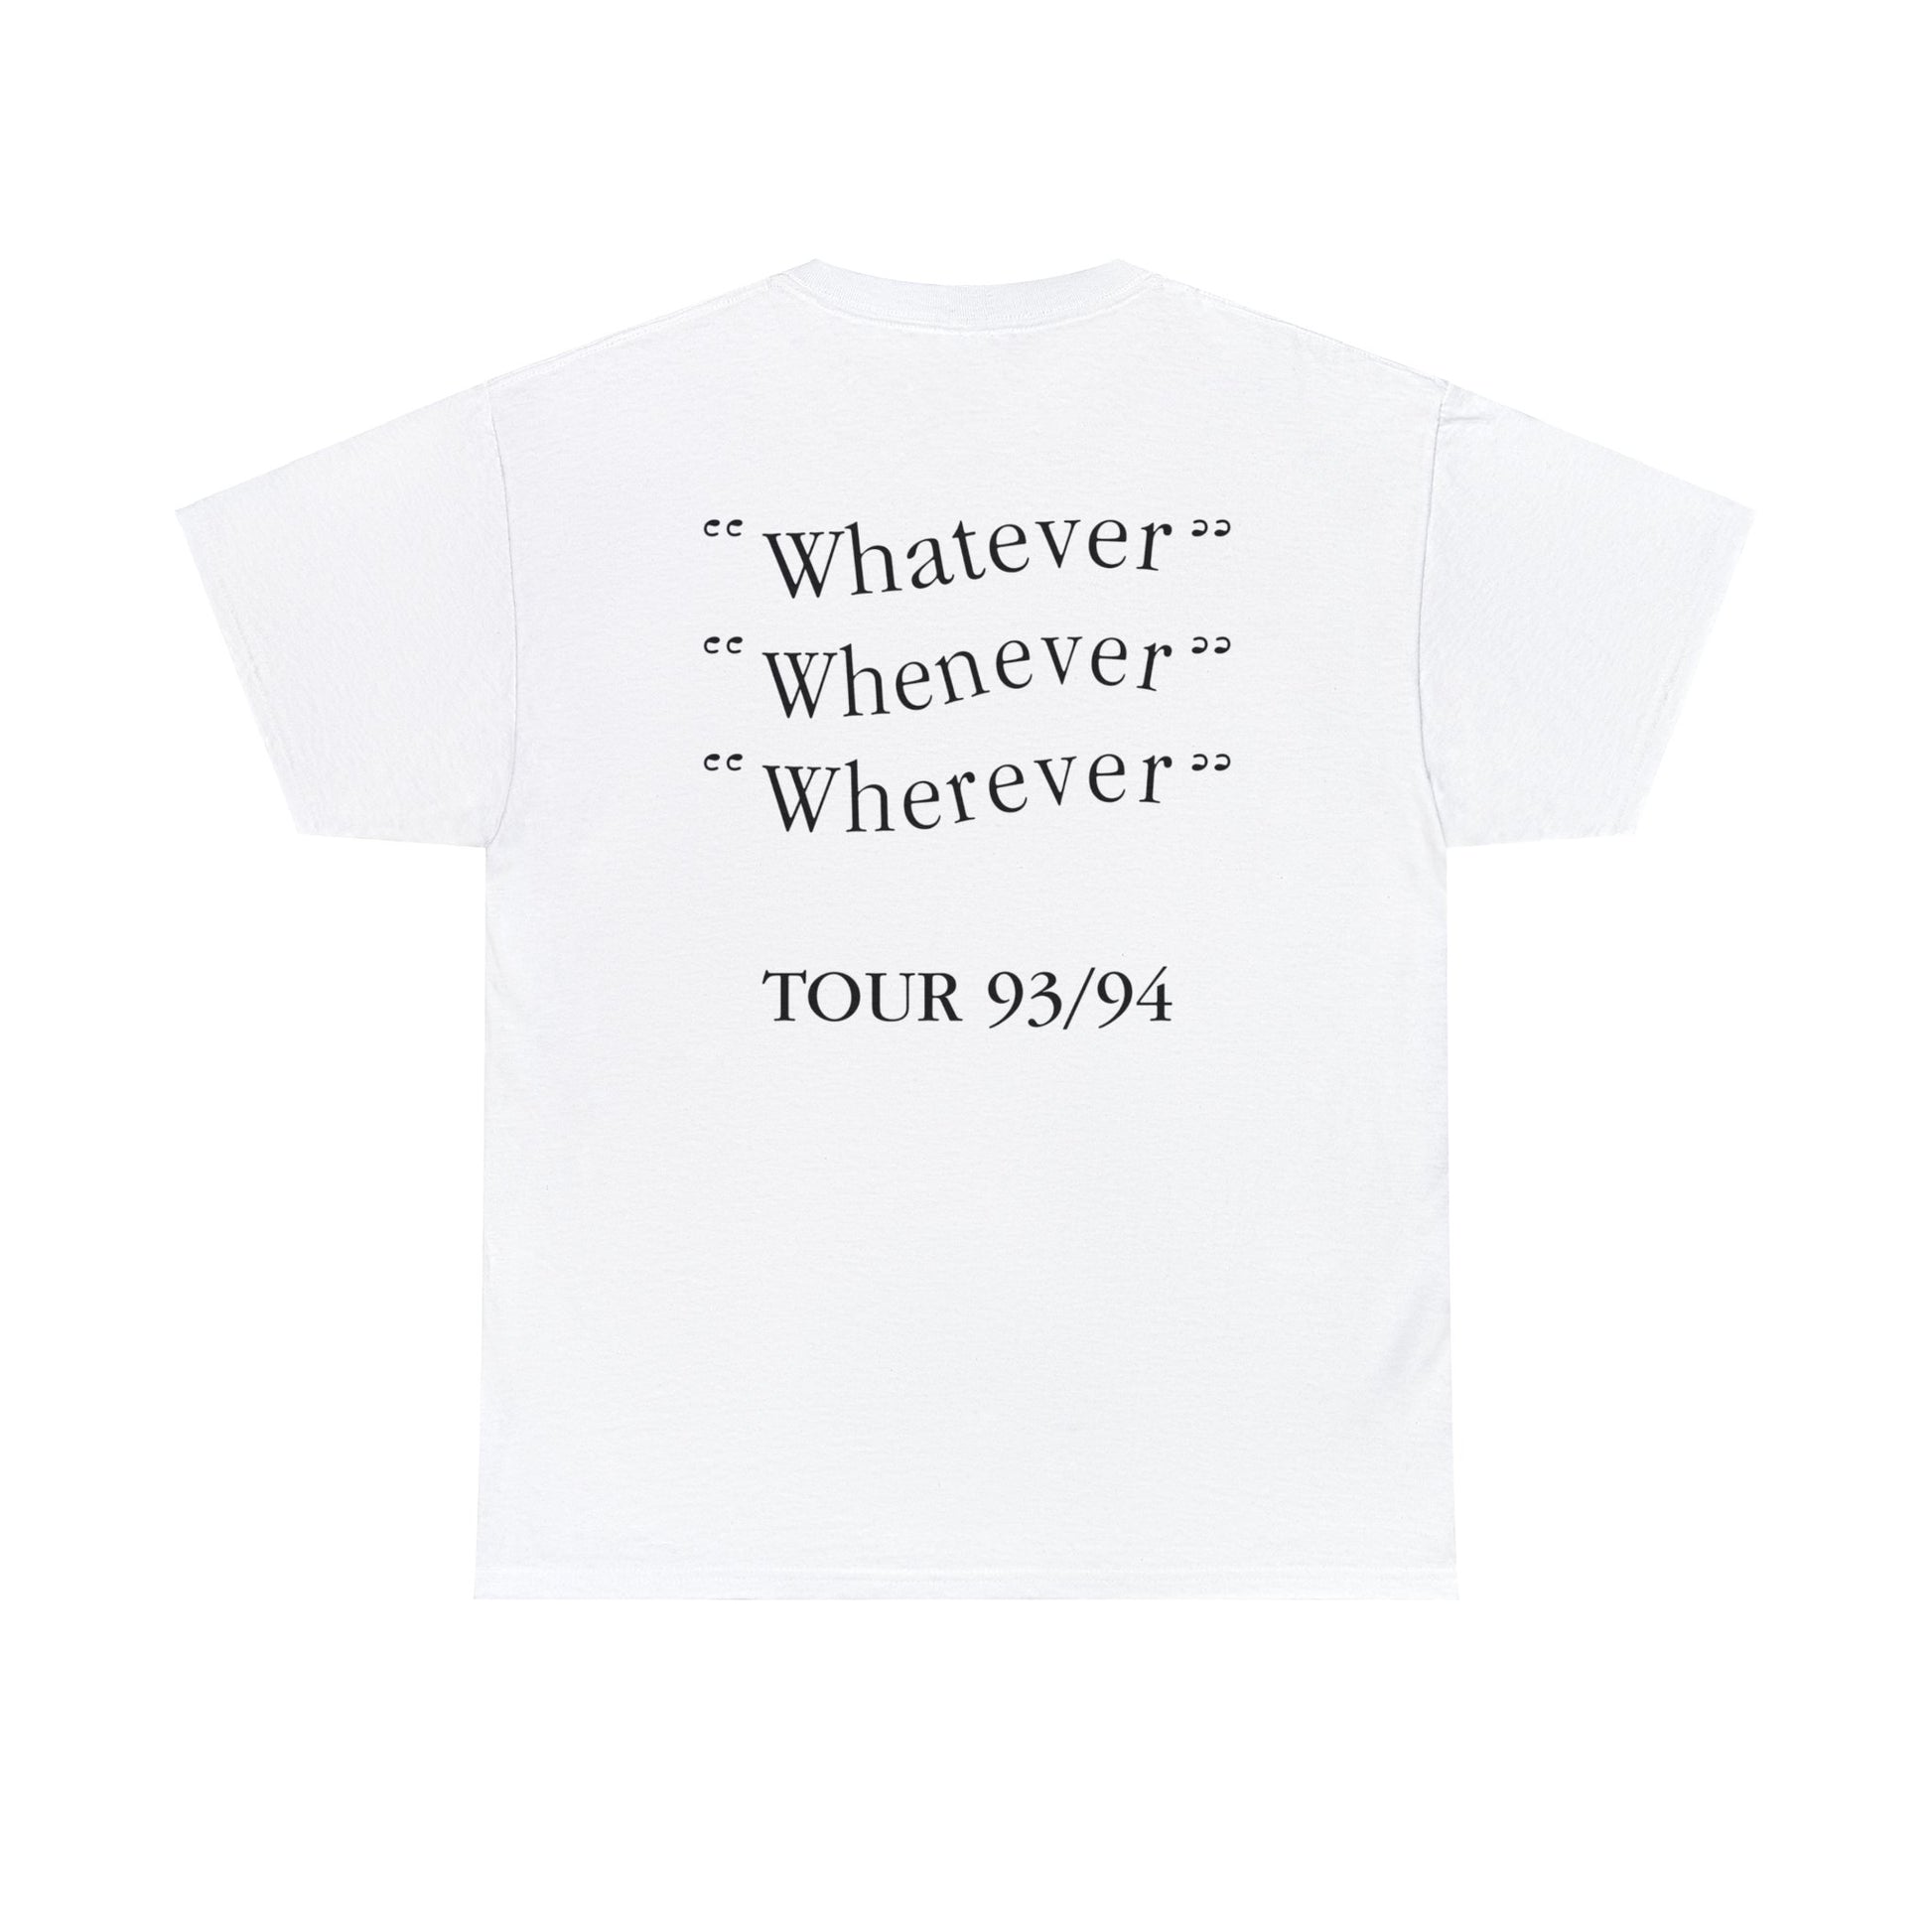 AIMEE MANN WHATEVER Tour 93-94 T-shirt for Sale